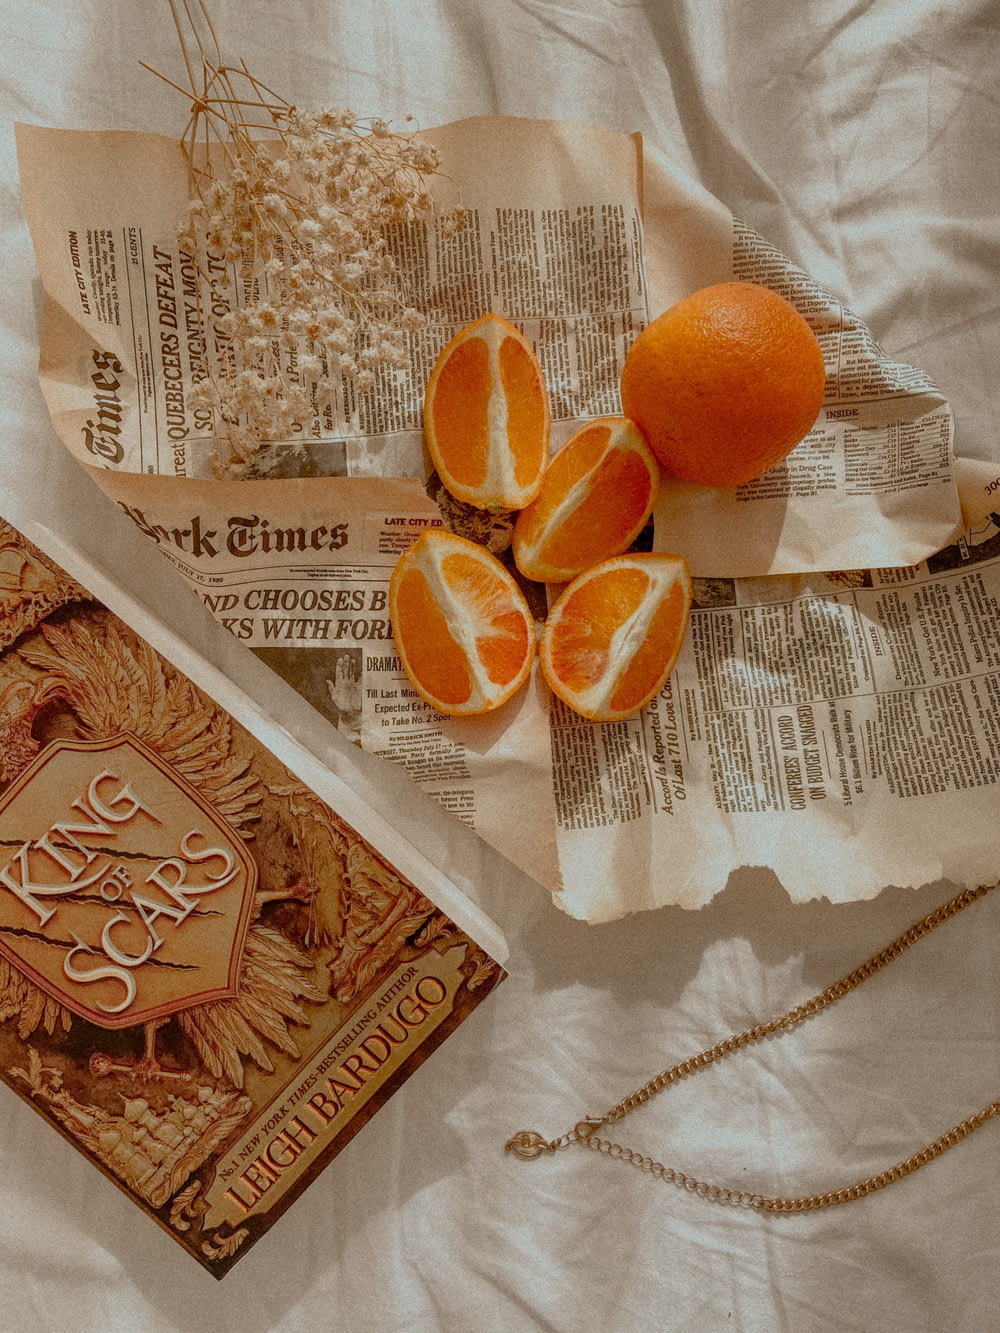 orange fruit on white textile